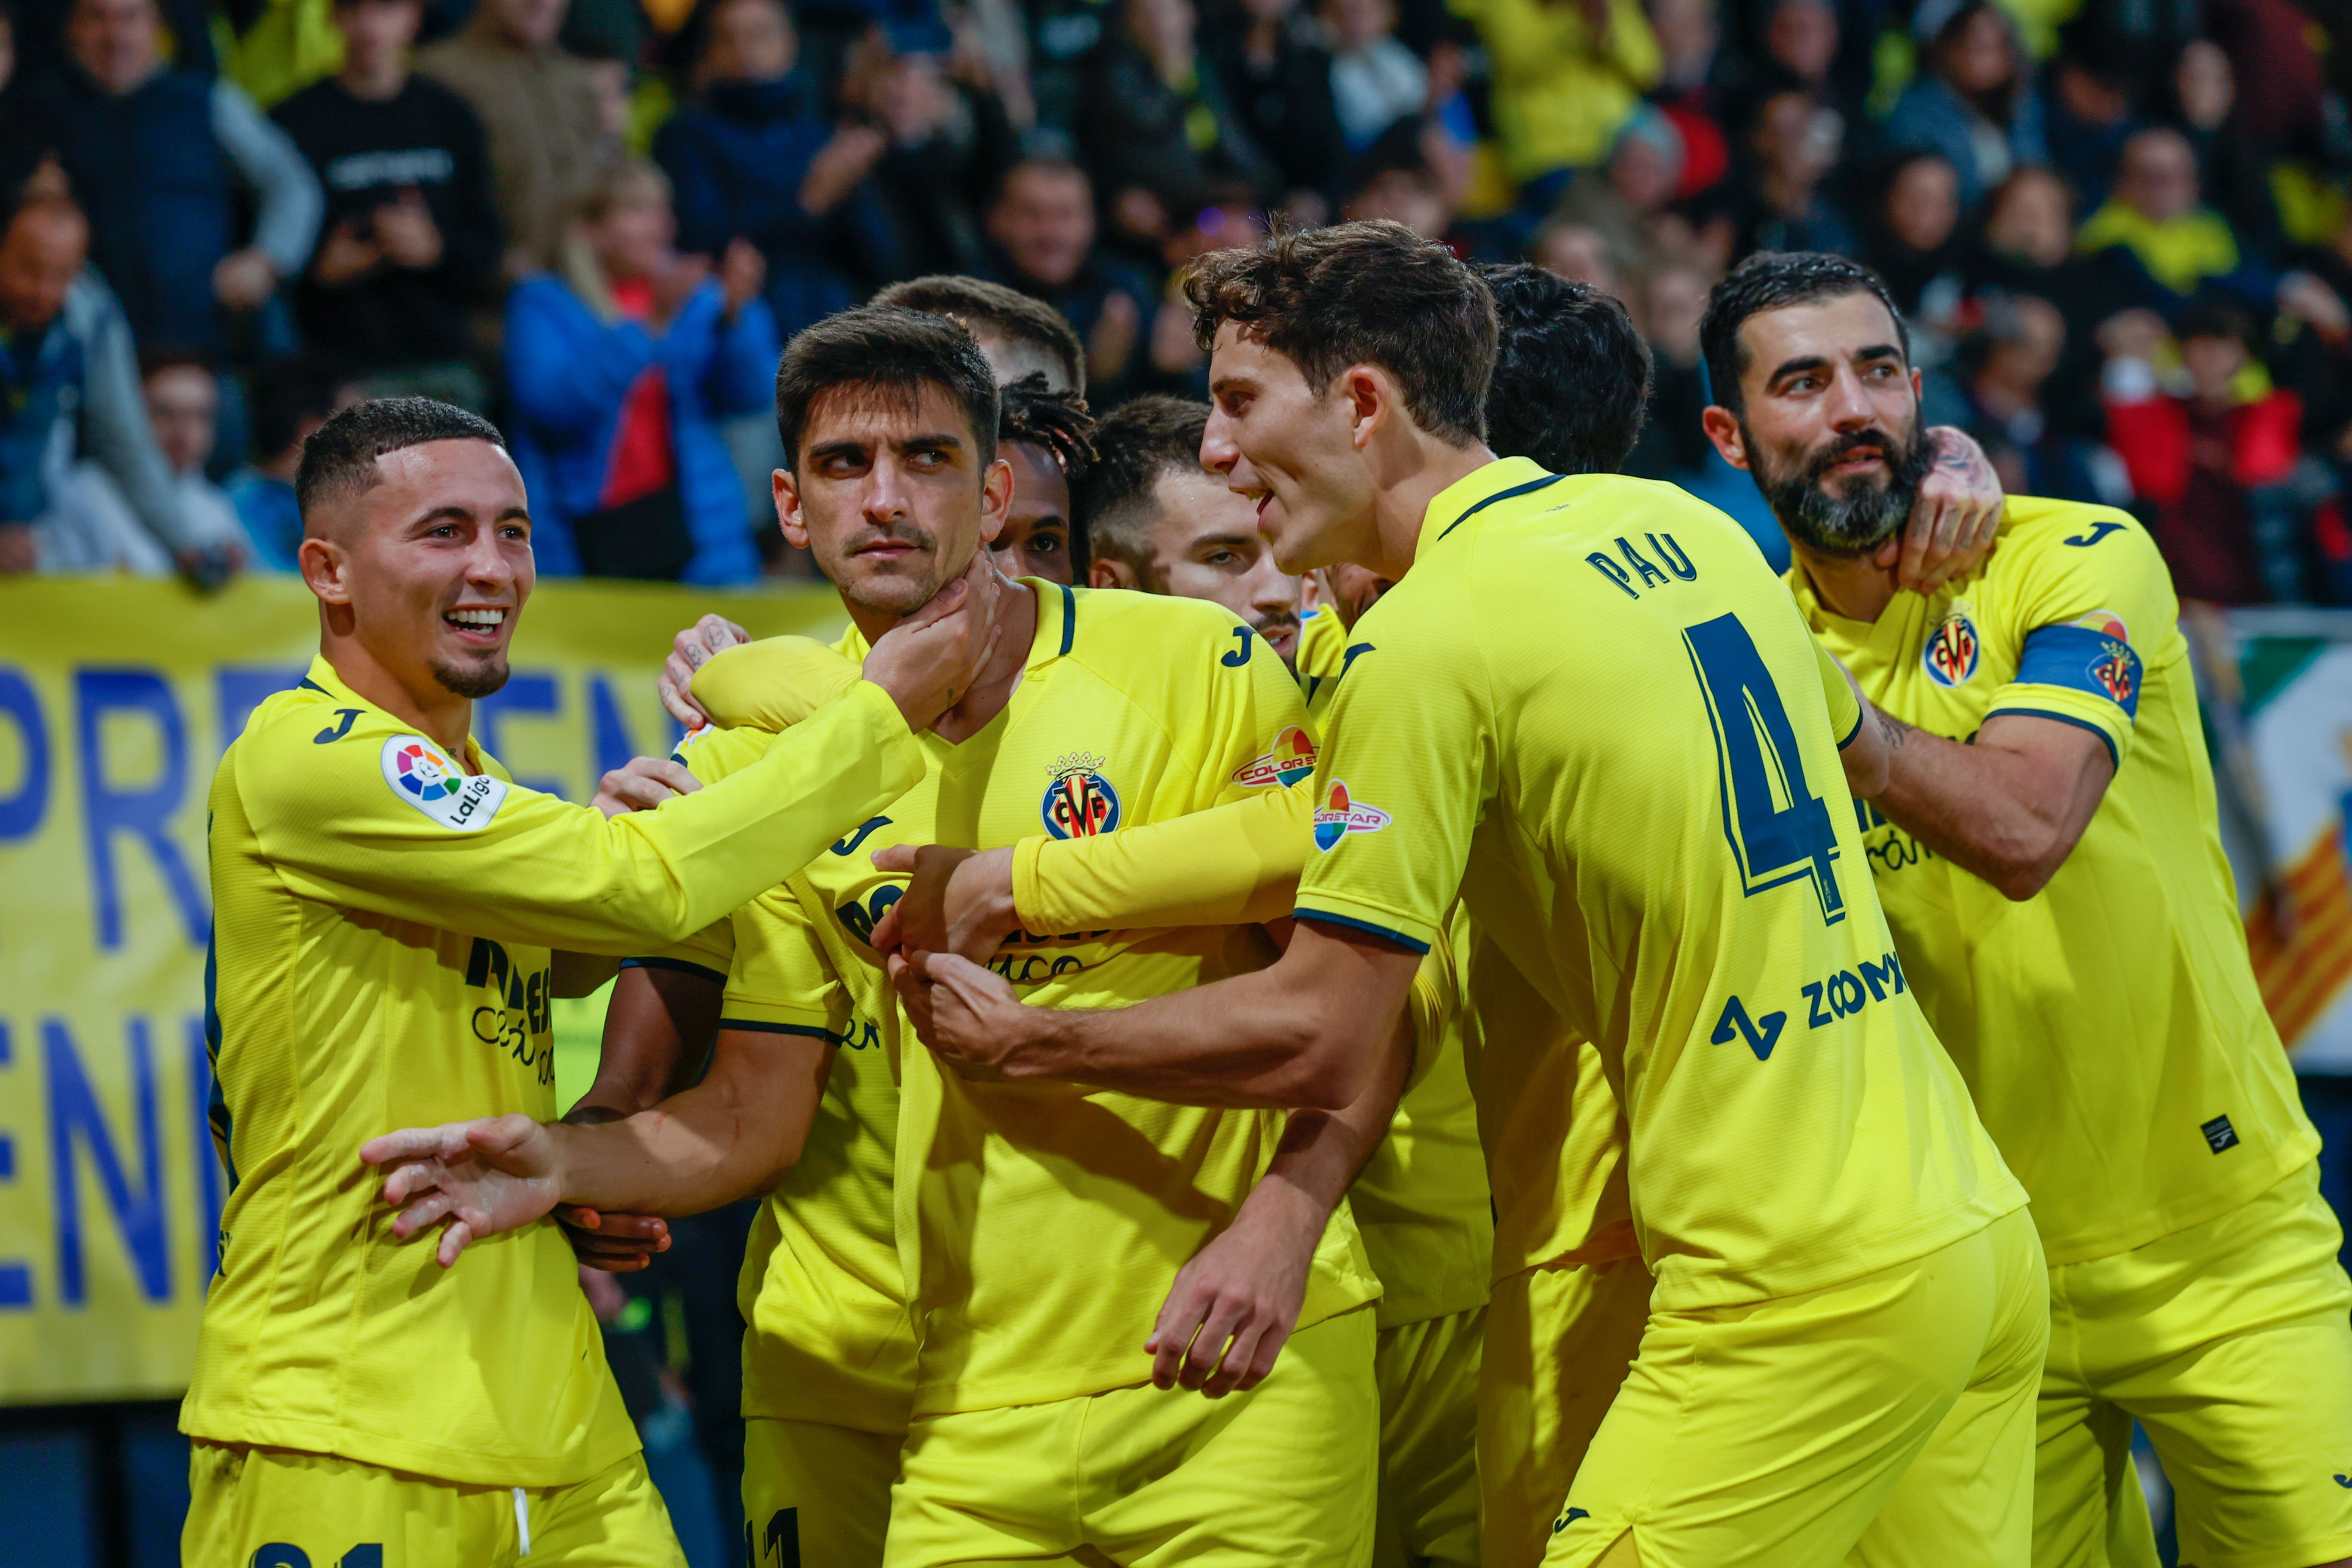 El Real Madrid cae derrotado contra el Villarreal (2-1) en un partido frenético